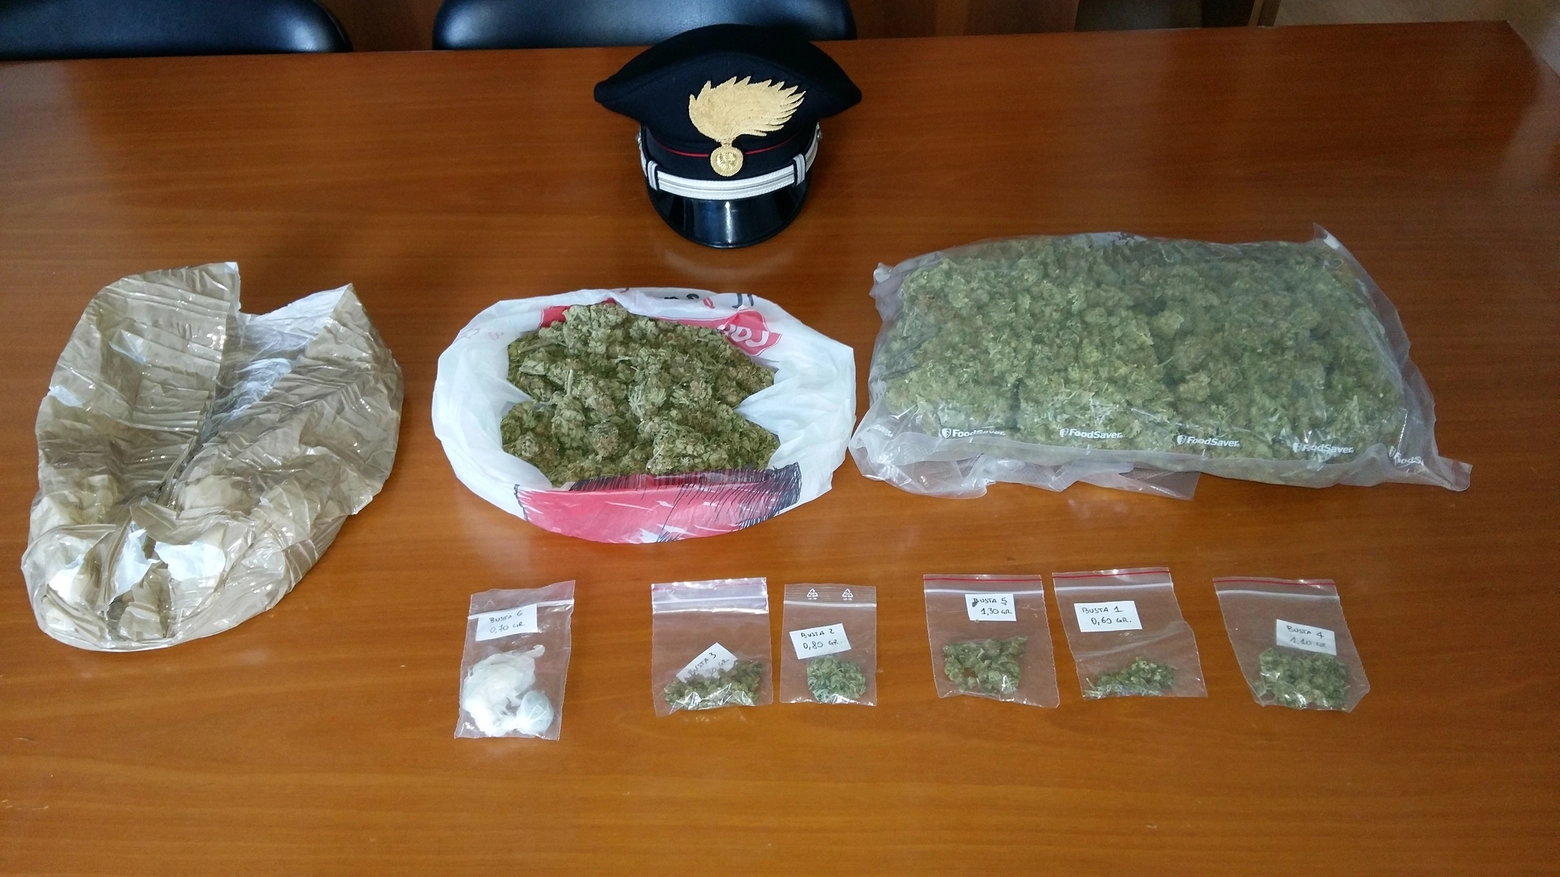 La marijuana recuperata dai carabinieri di Seregno